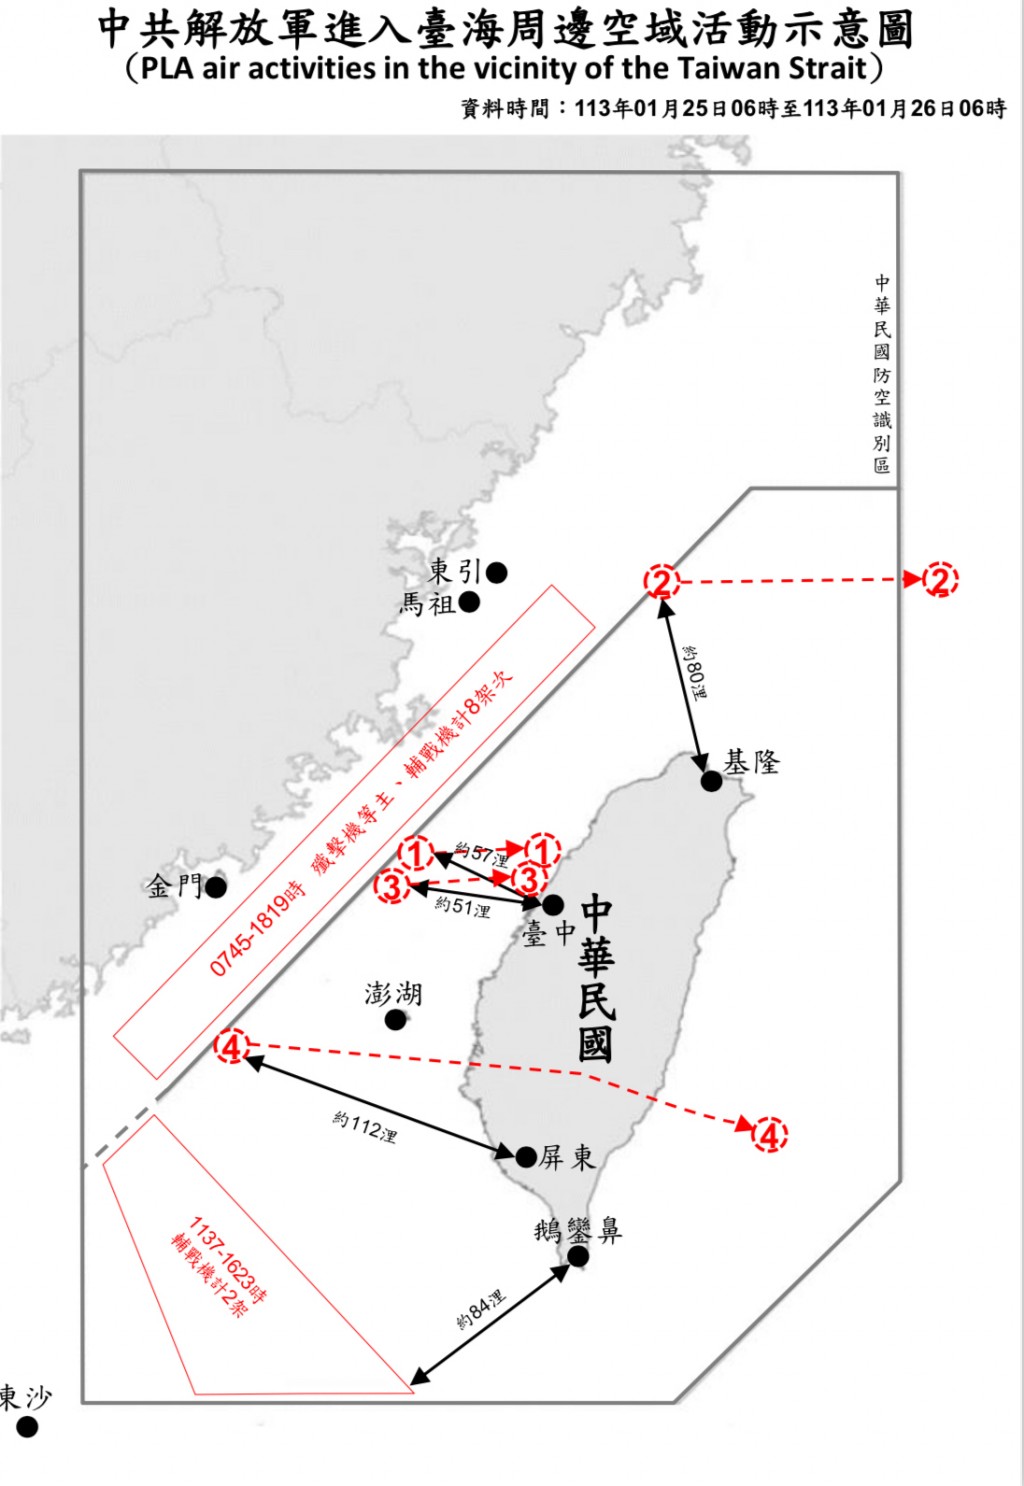 China sends 10 military aircraft, 4 navy ships, 4 balloons around Taiwan